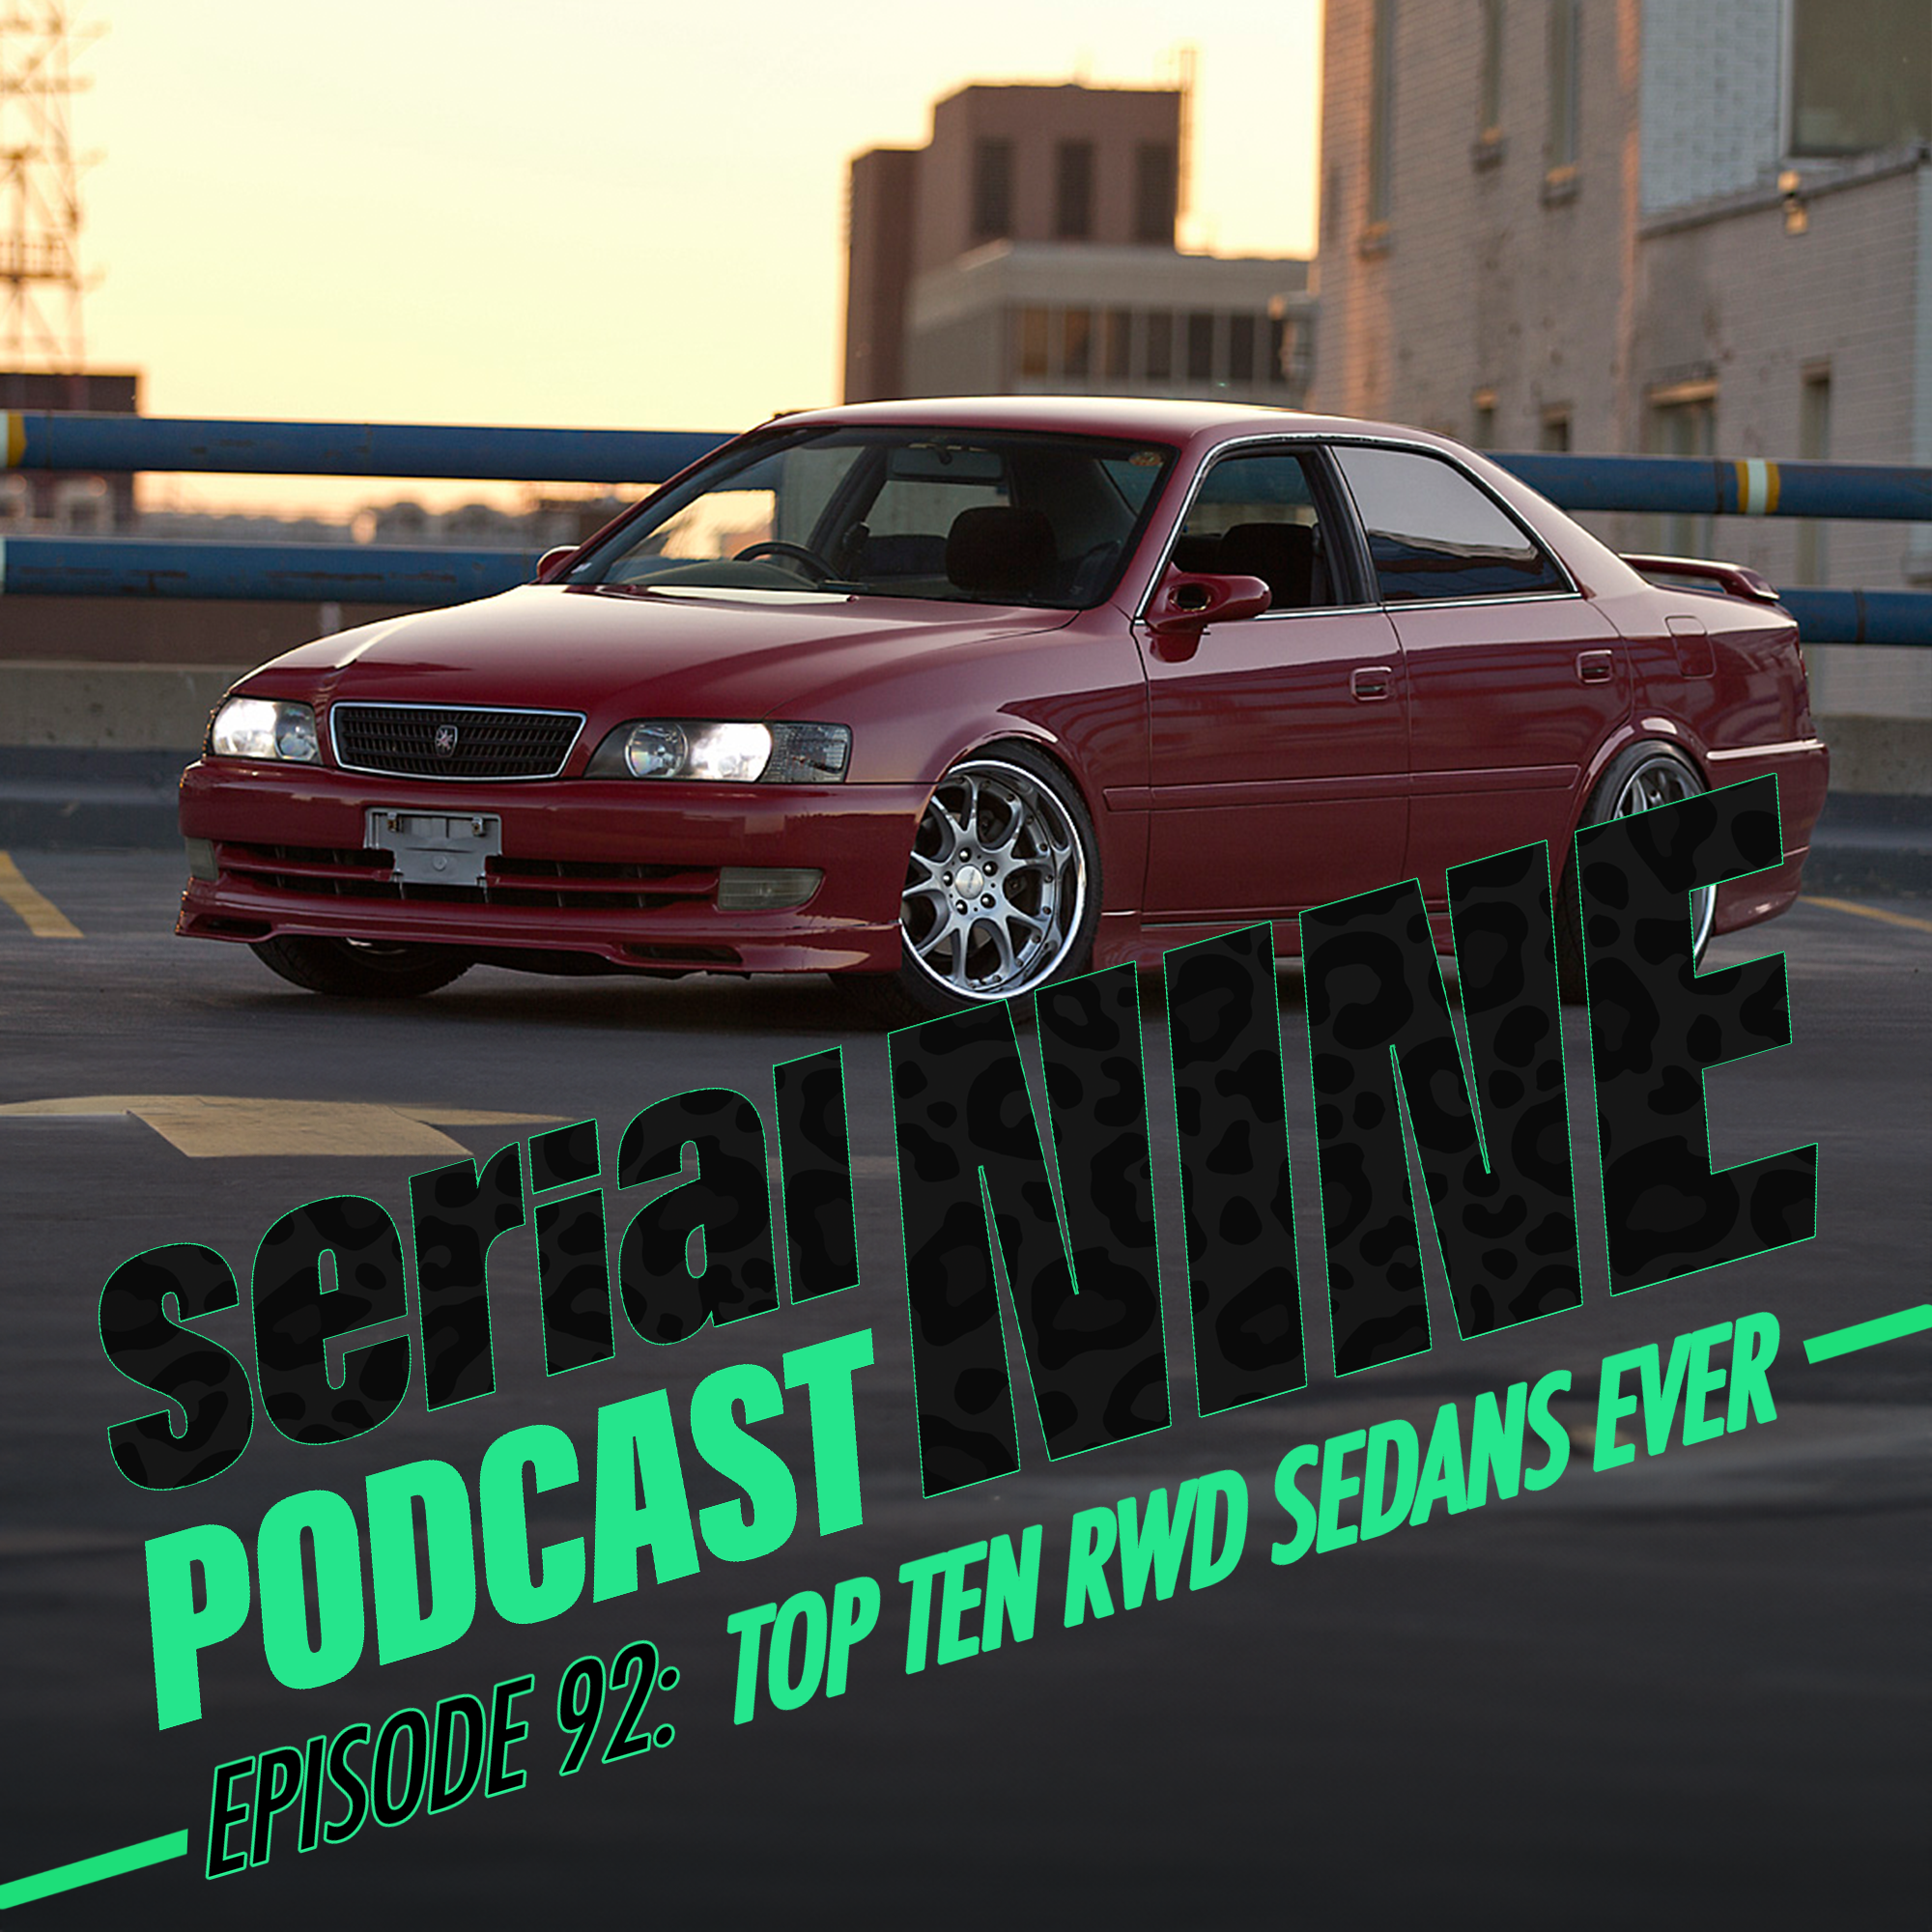 SerialPodcastNine Episode 92: Top 10 RWD Sedans Ever